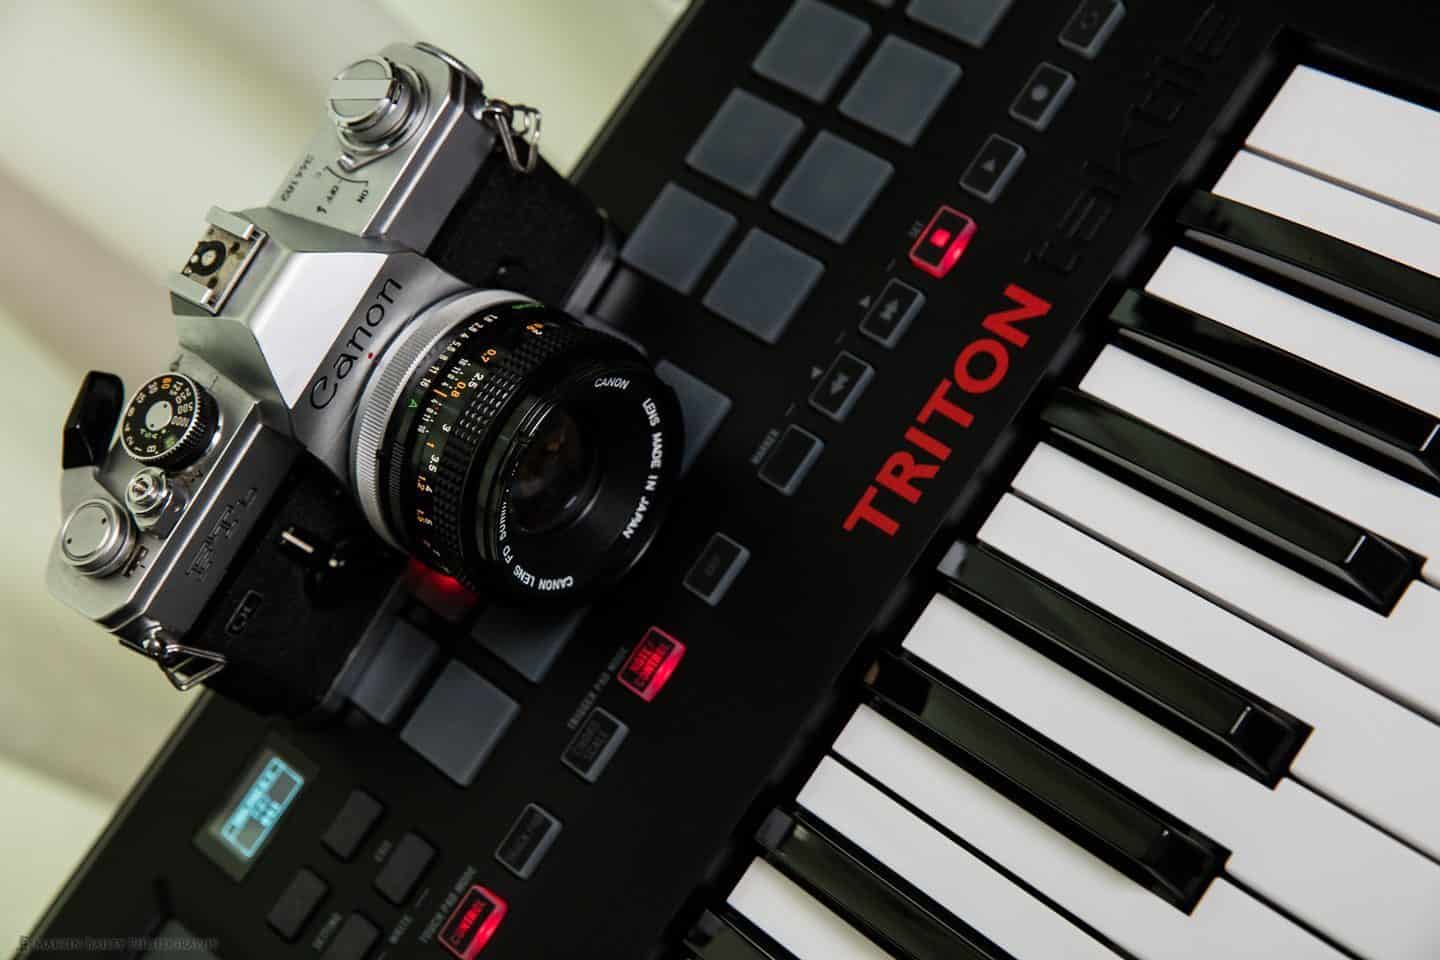 Camera and Keyboard